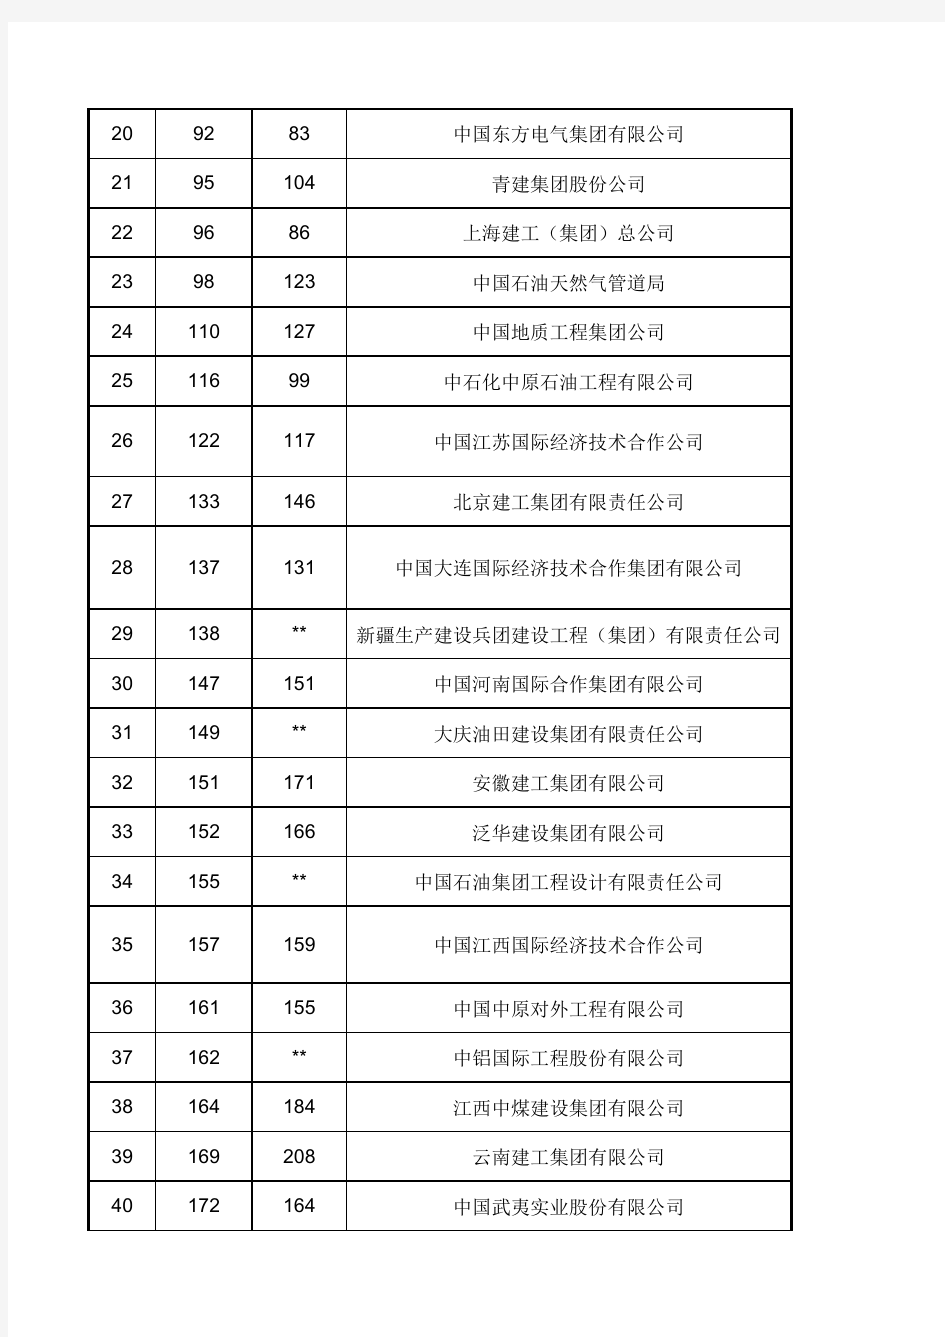 2013年度ENR全球最大250家国际承包商中国企业排名